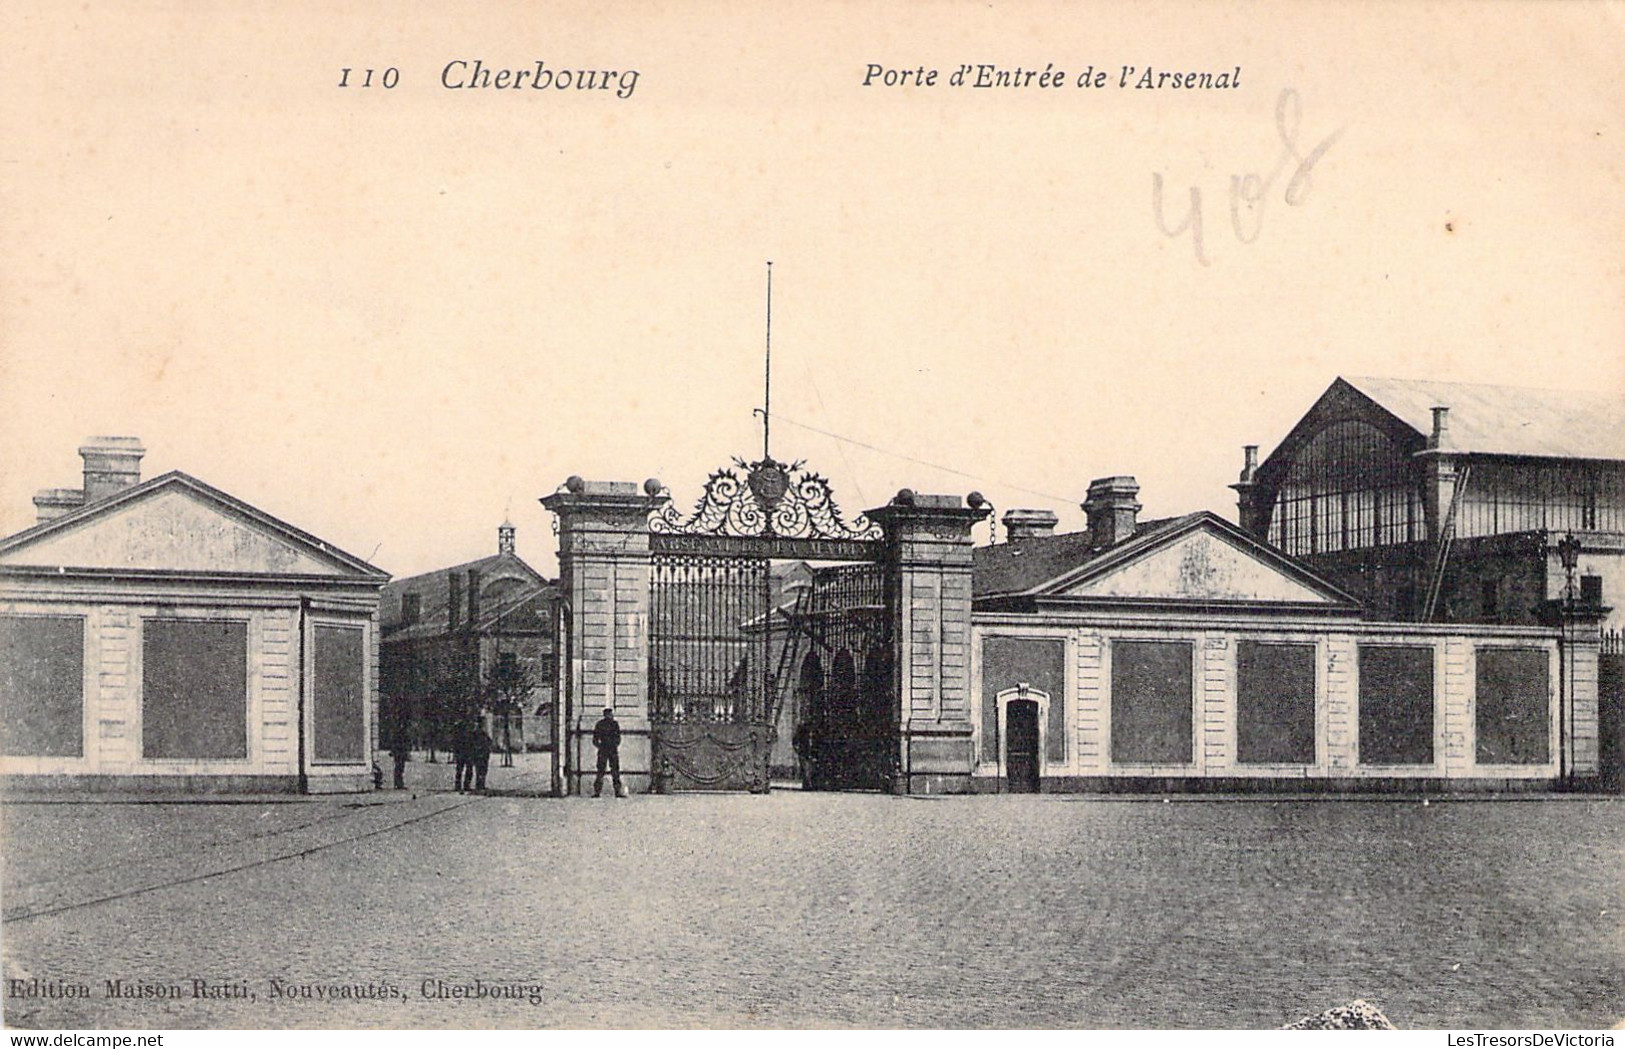 MILITARIA - CHERBOURG - Porte D'entrée De L'Arsenal - Edition Maison Ratti - Carte Postale Ancienne - Casernes